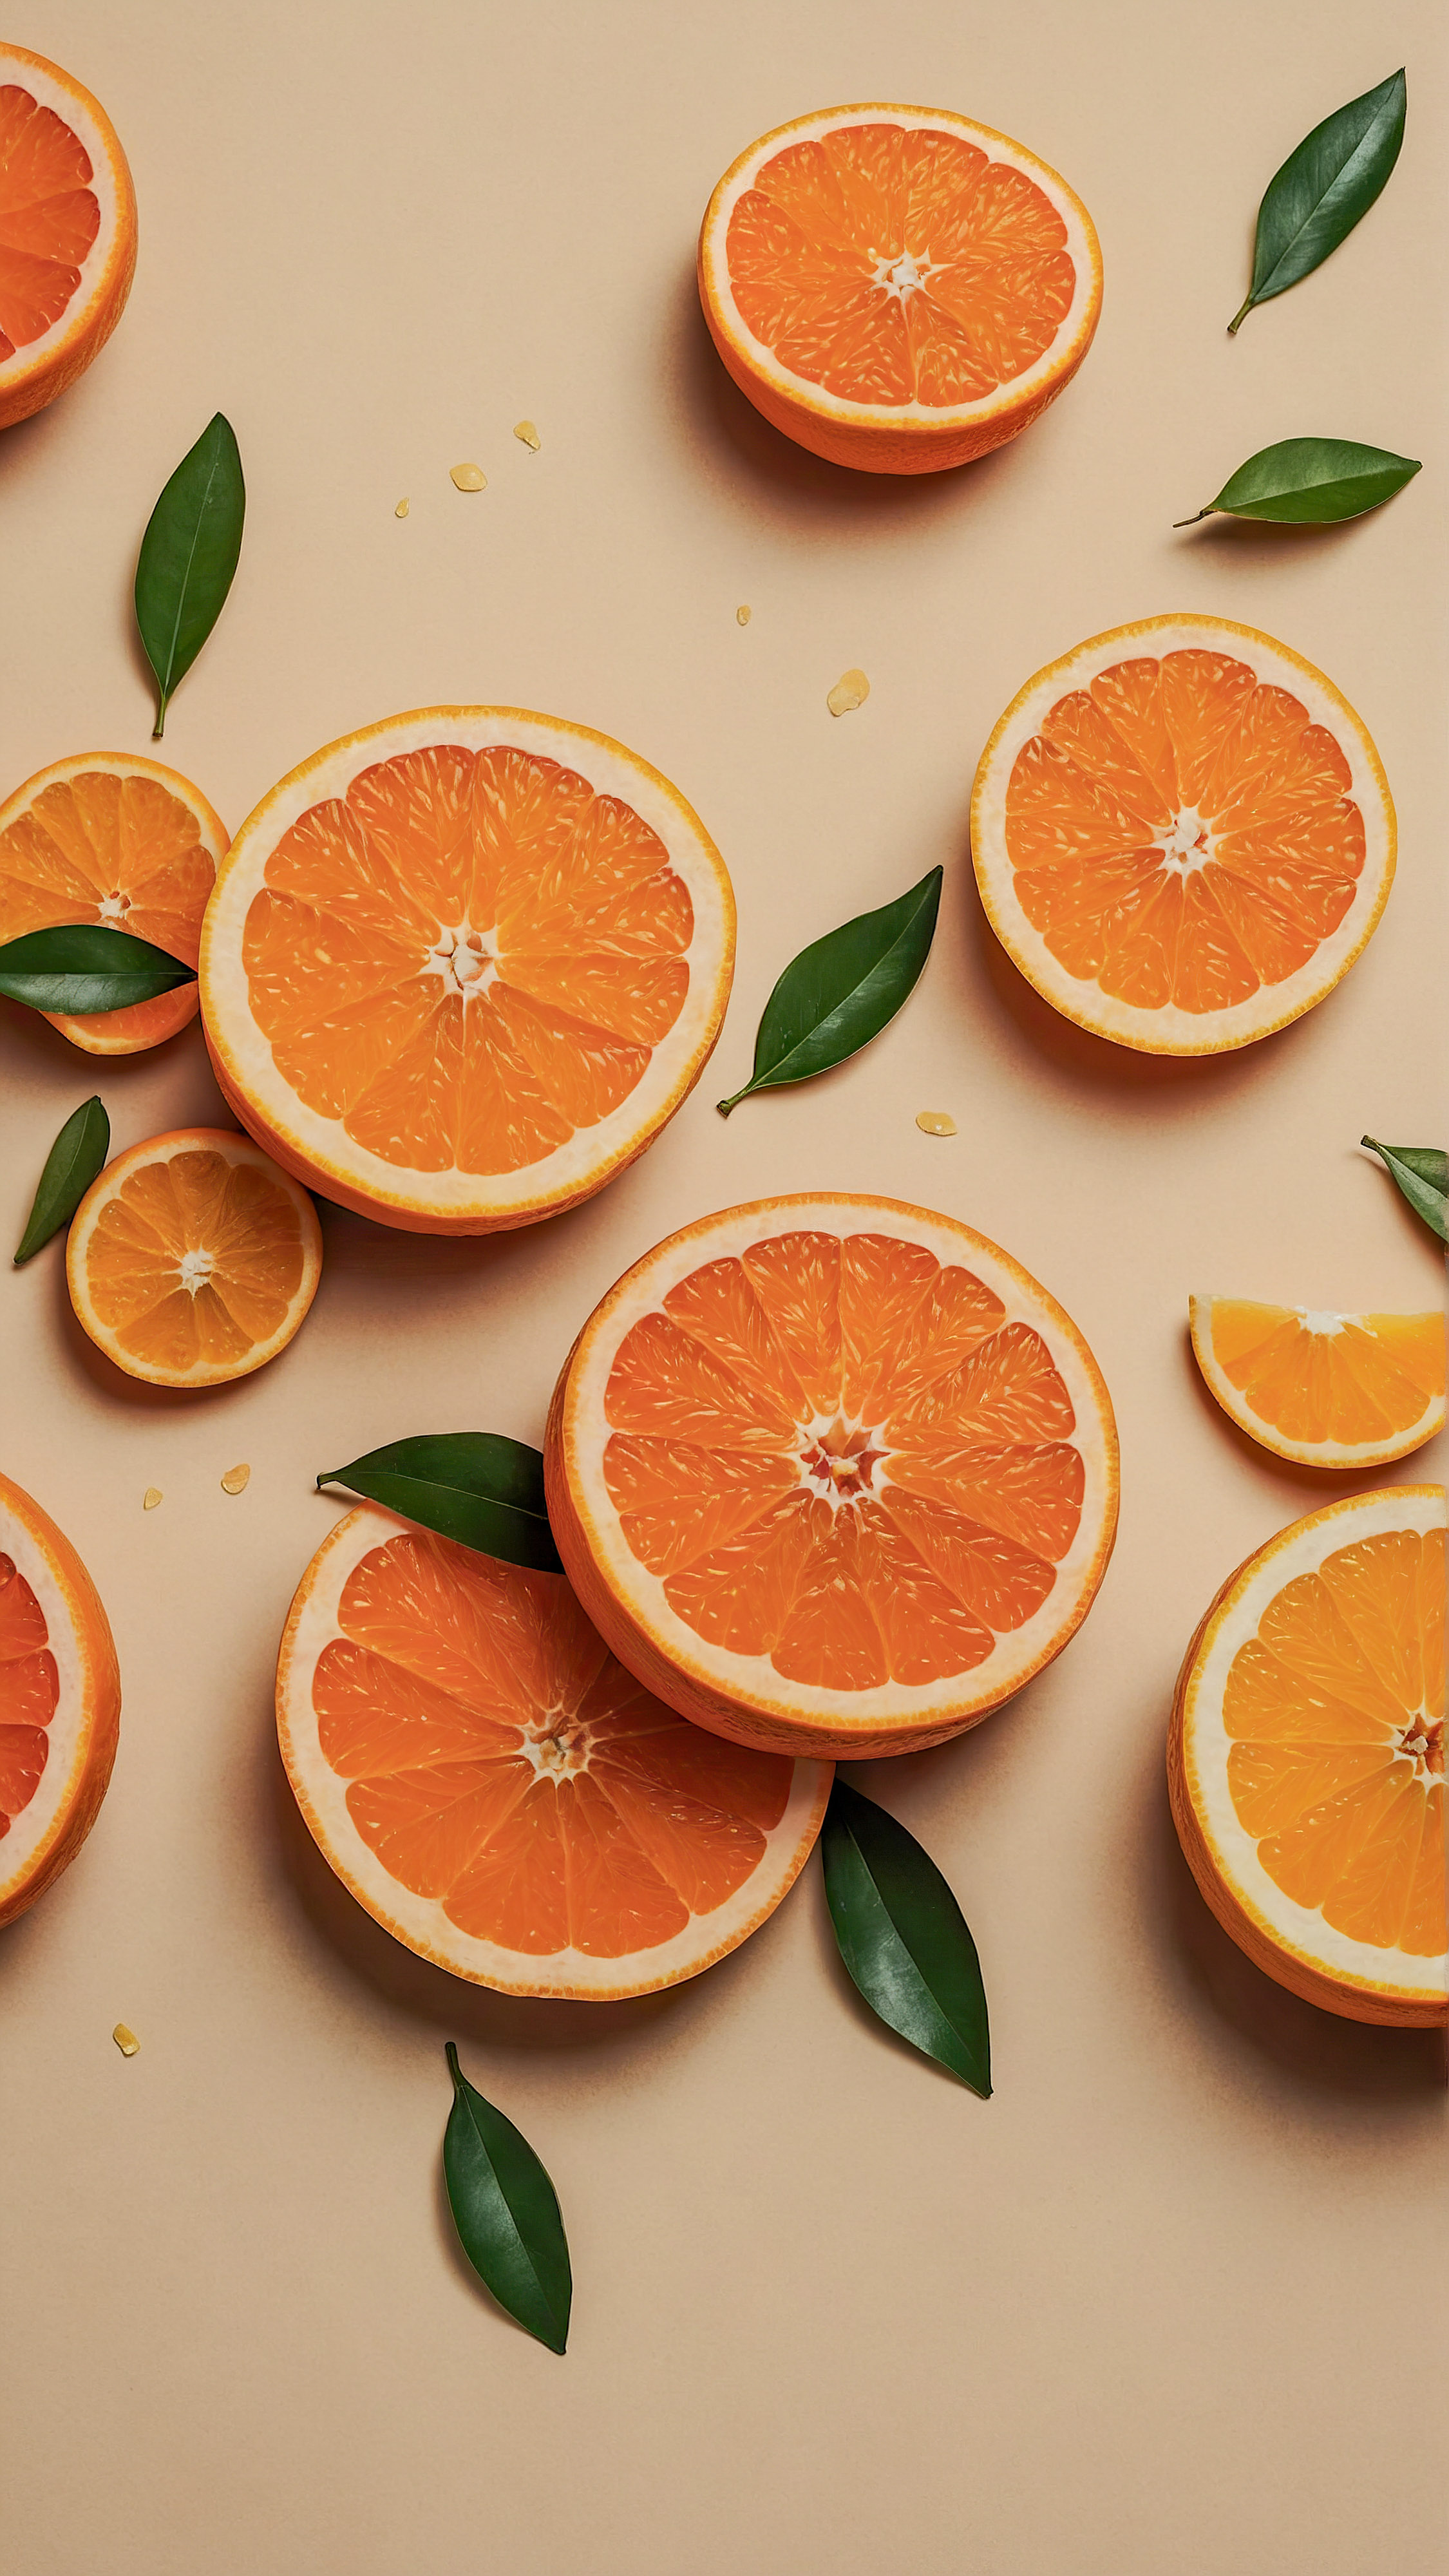 Transformez l'apparence de votre appareil avec un beau fond d'écran esthétique cool pour iPhone, présentant un design à motifs avec diverses illustrations d'oranges entières et tranchées sur un arrière-plan beige clair texturé.